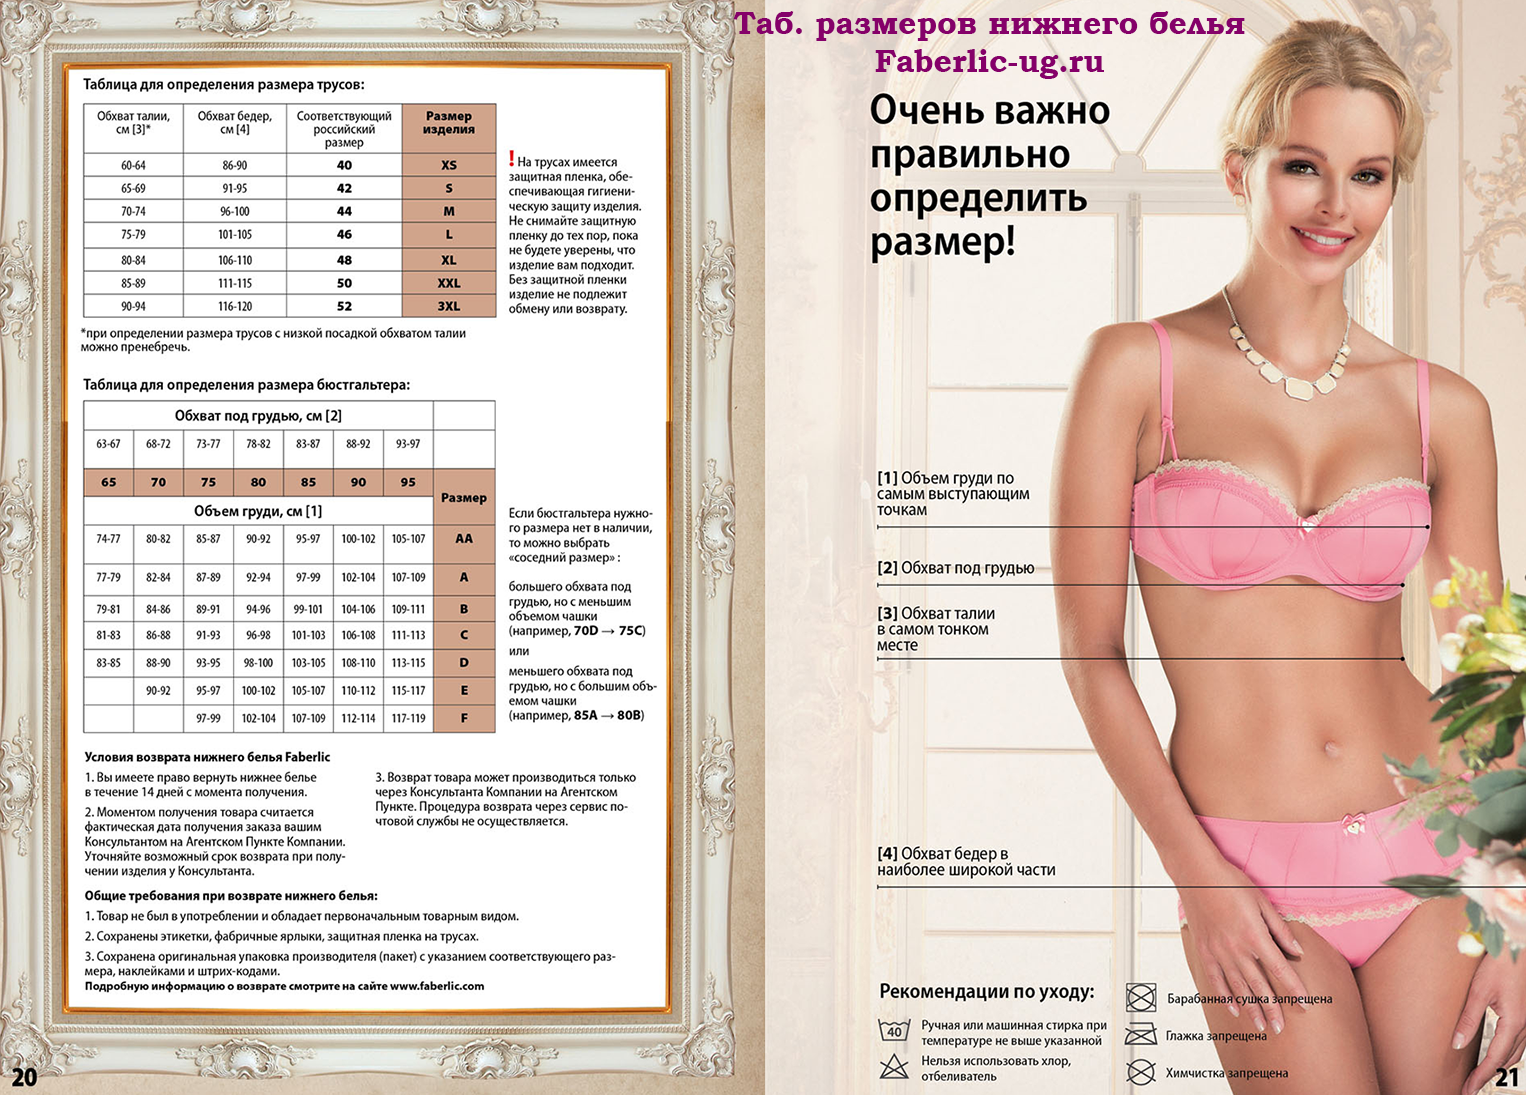 таблица размеров груди по россии фото 83